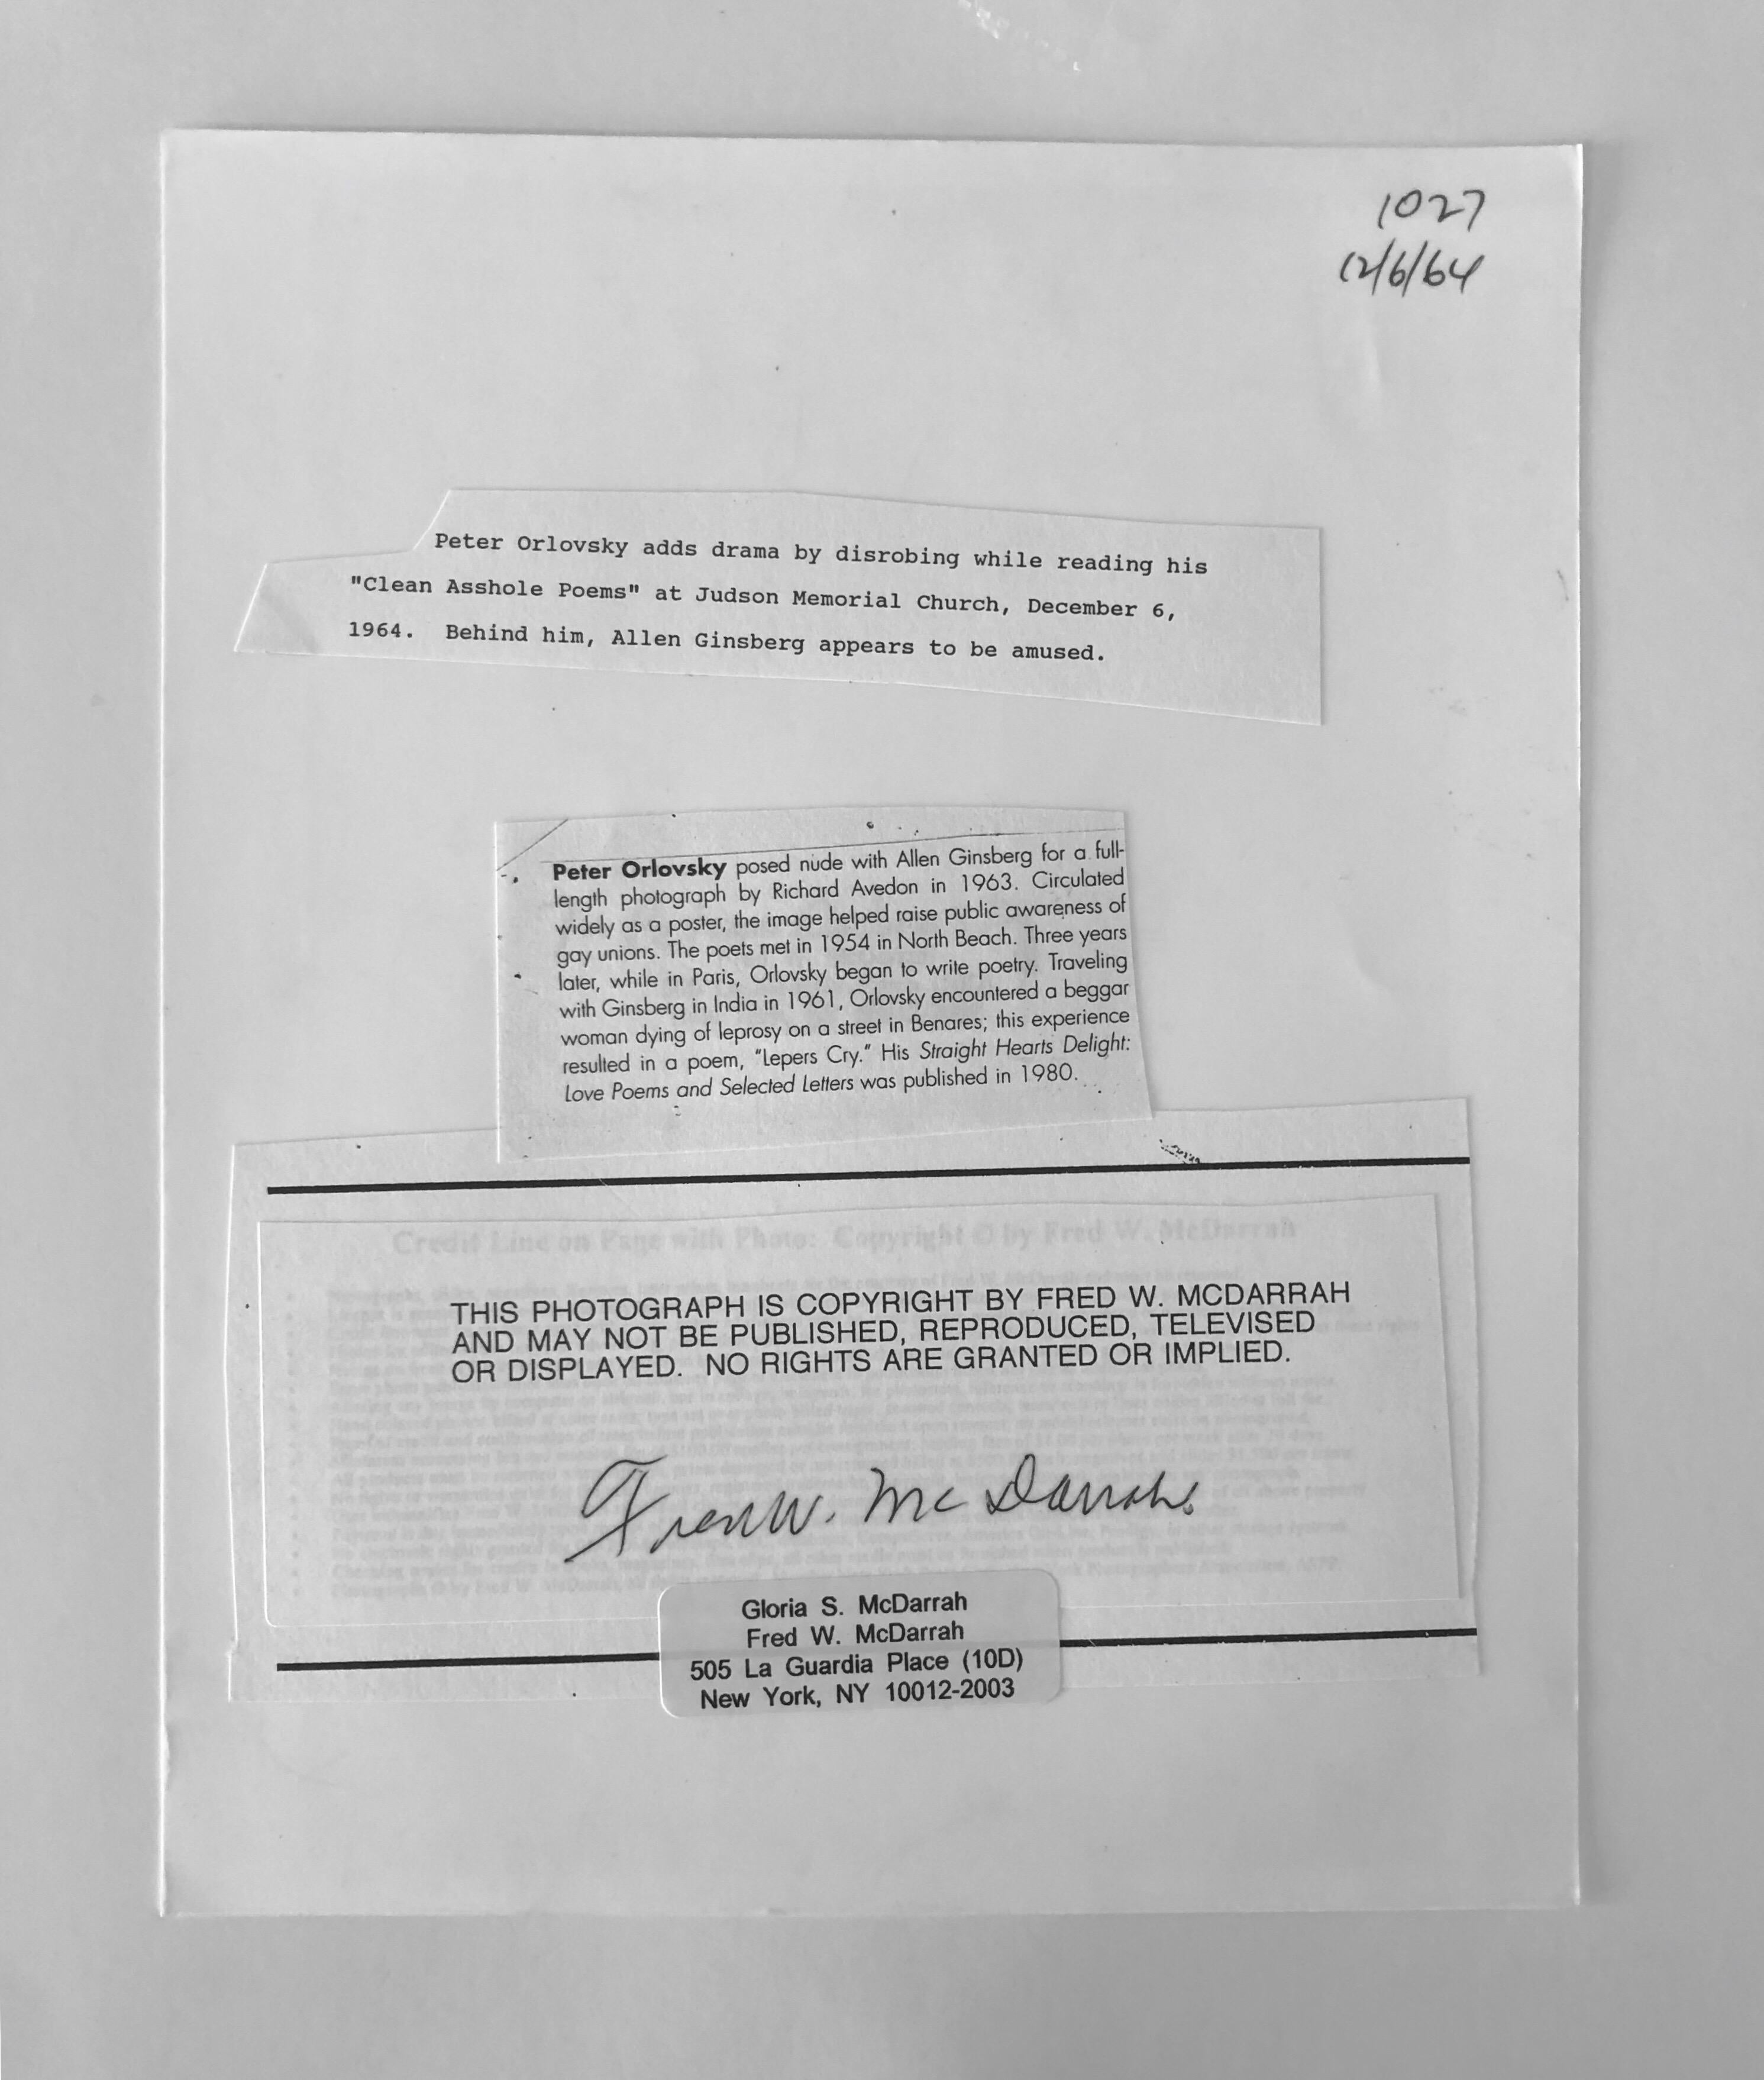 Signierte Silber-Gelatin-Fotografie, Beat Poet Peter Orlovsky Beatnik, Foto (Amerikanische Moderne), Photograph, von Fred McDarrah